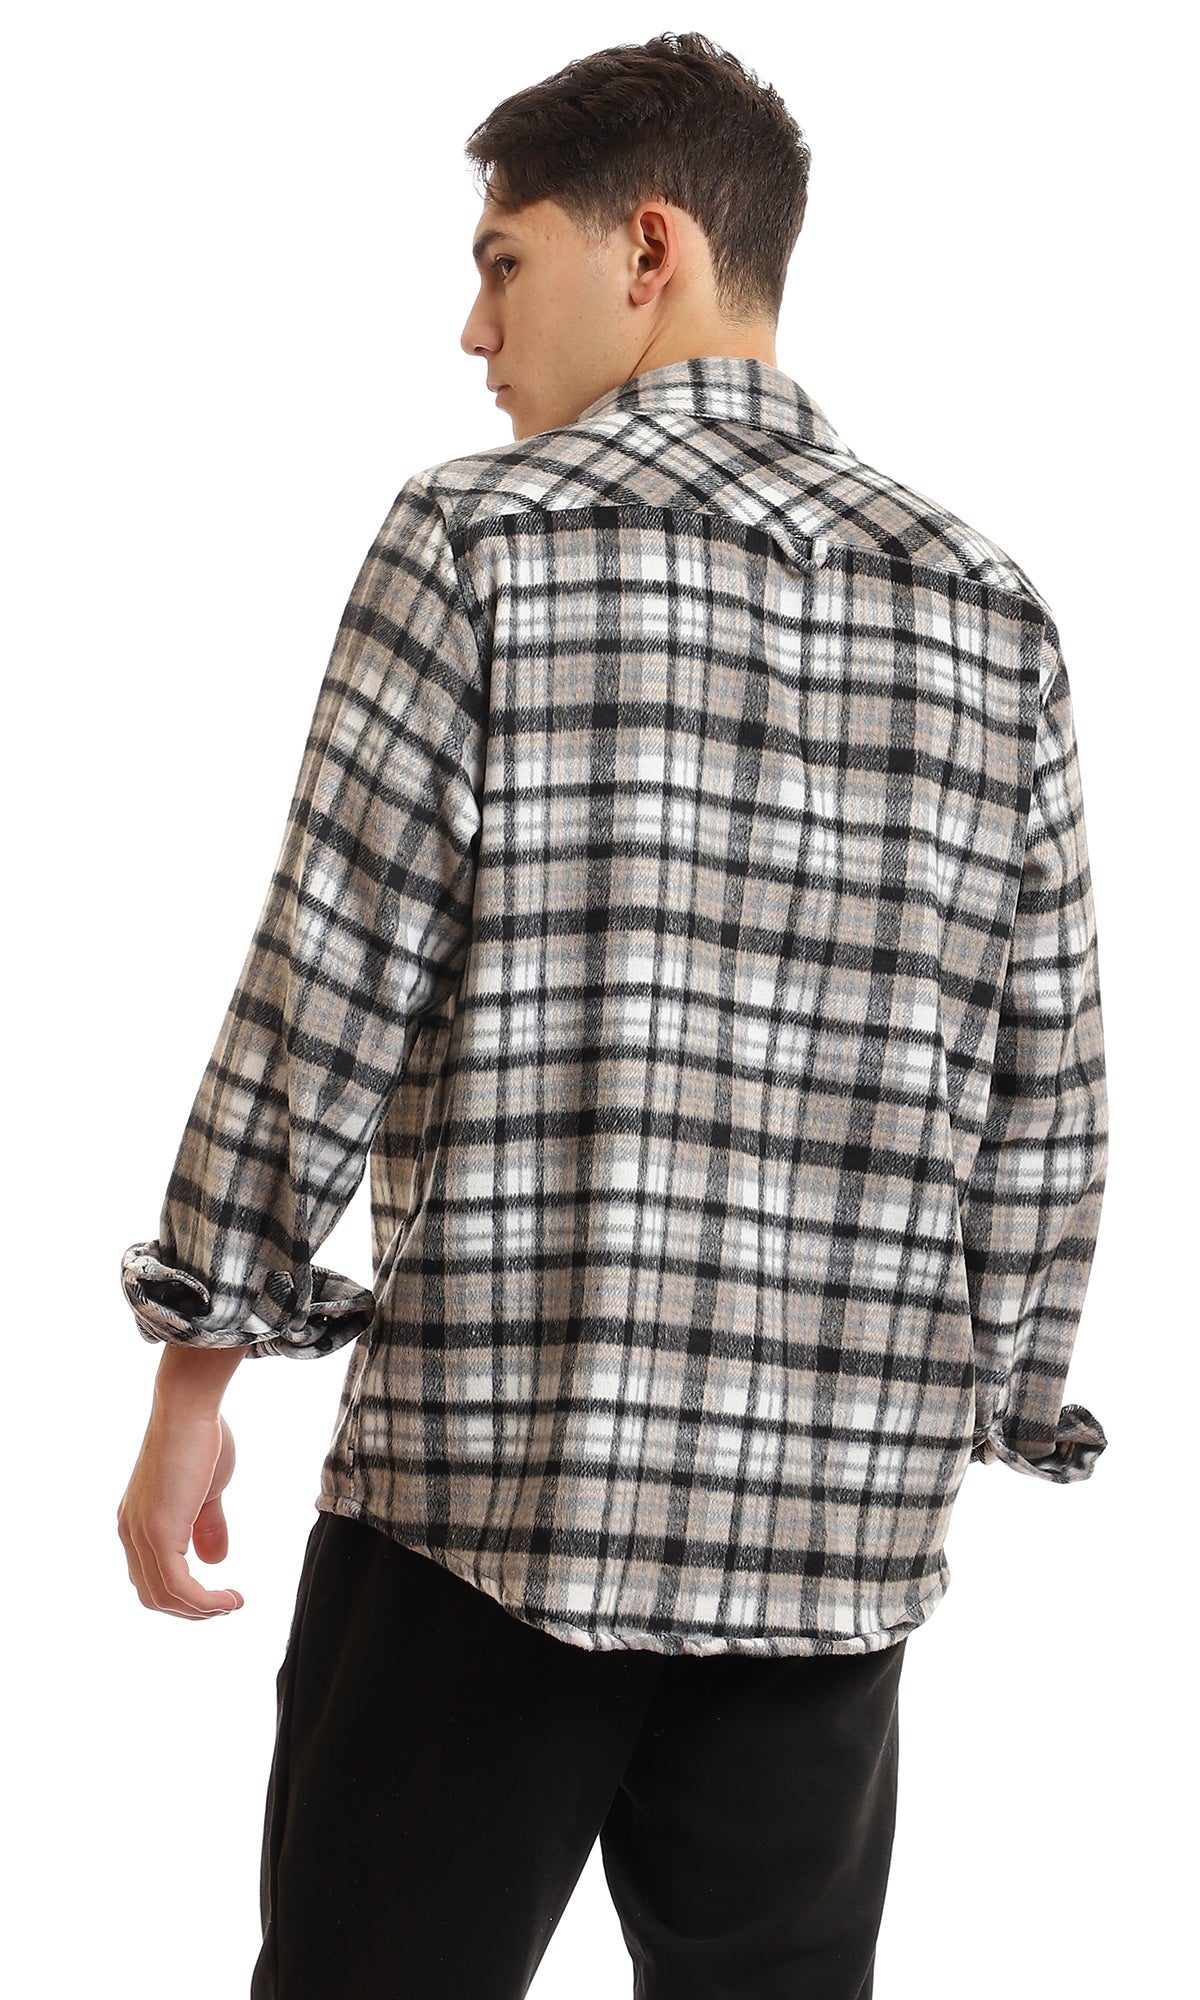 95995 Cotton Checkered Side Left Pocket Shirt - Black & Beige